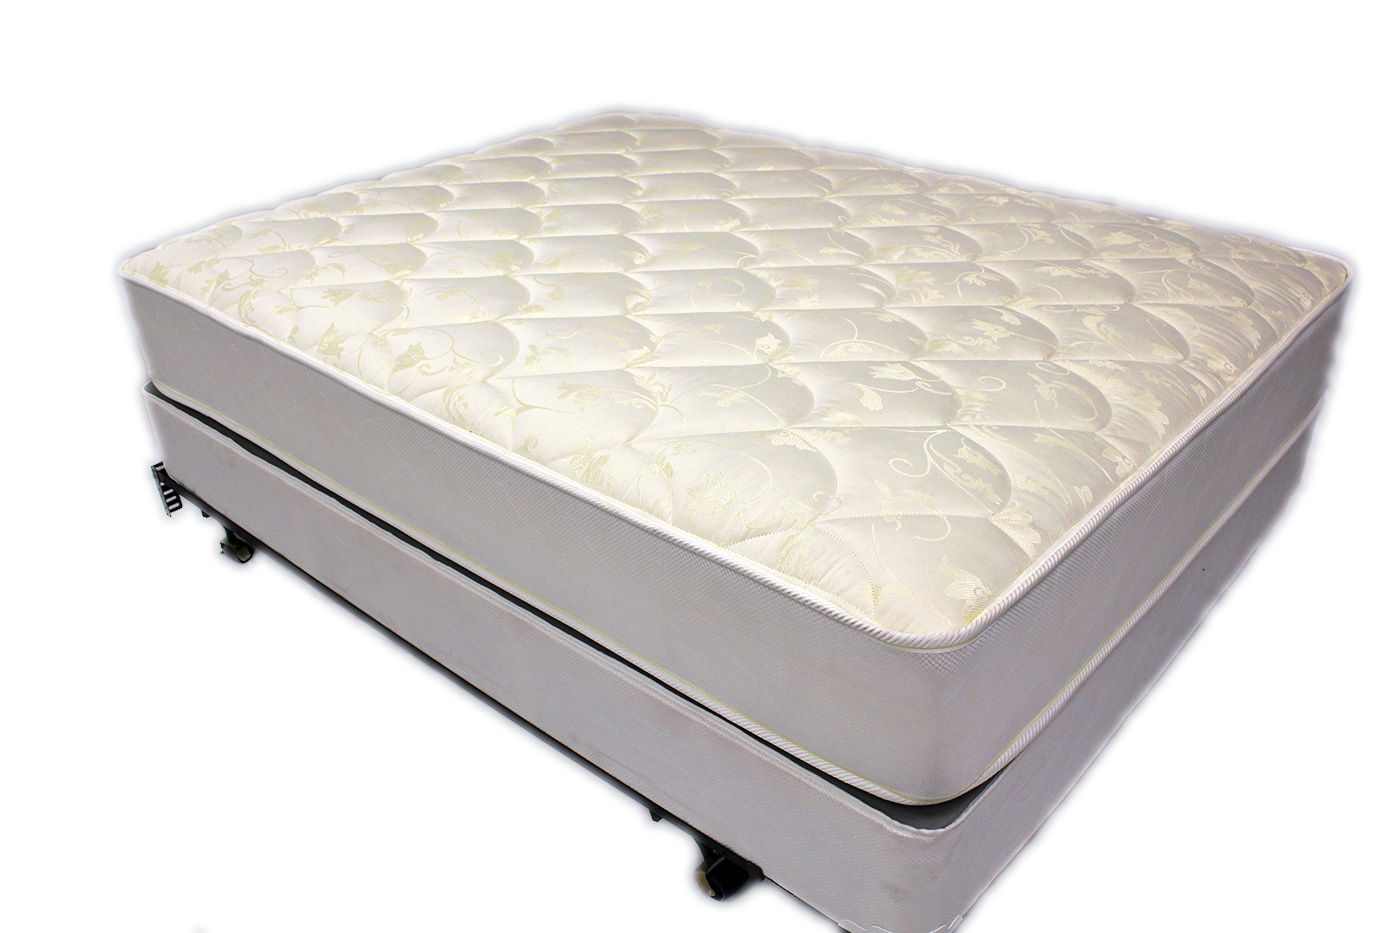 dreamwell mattress king size price